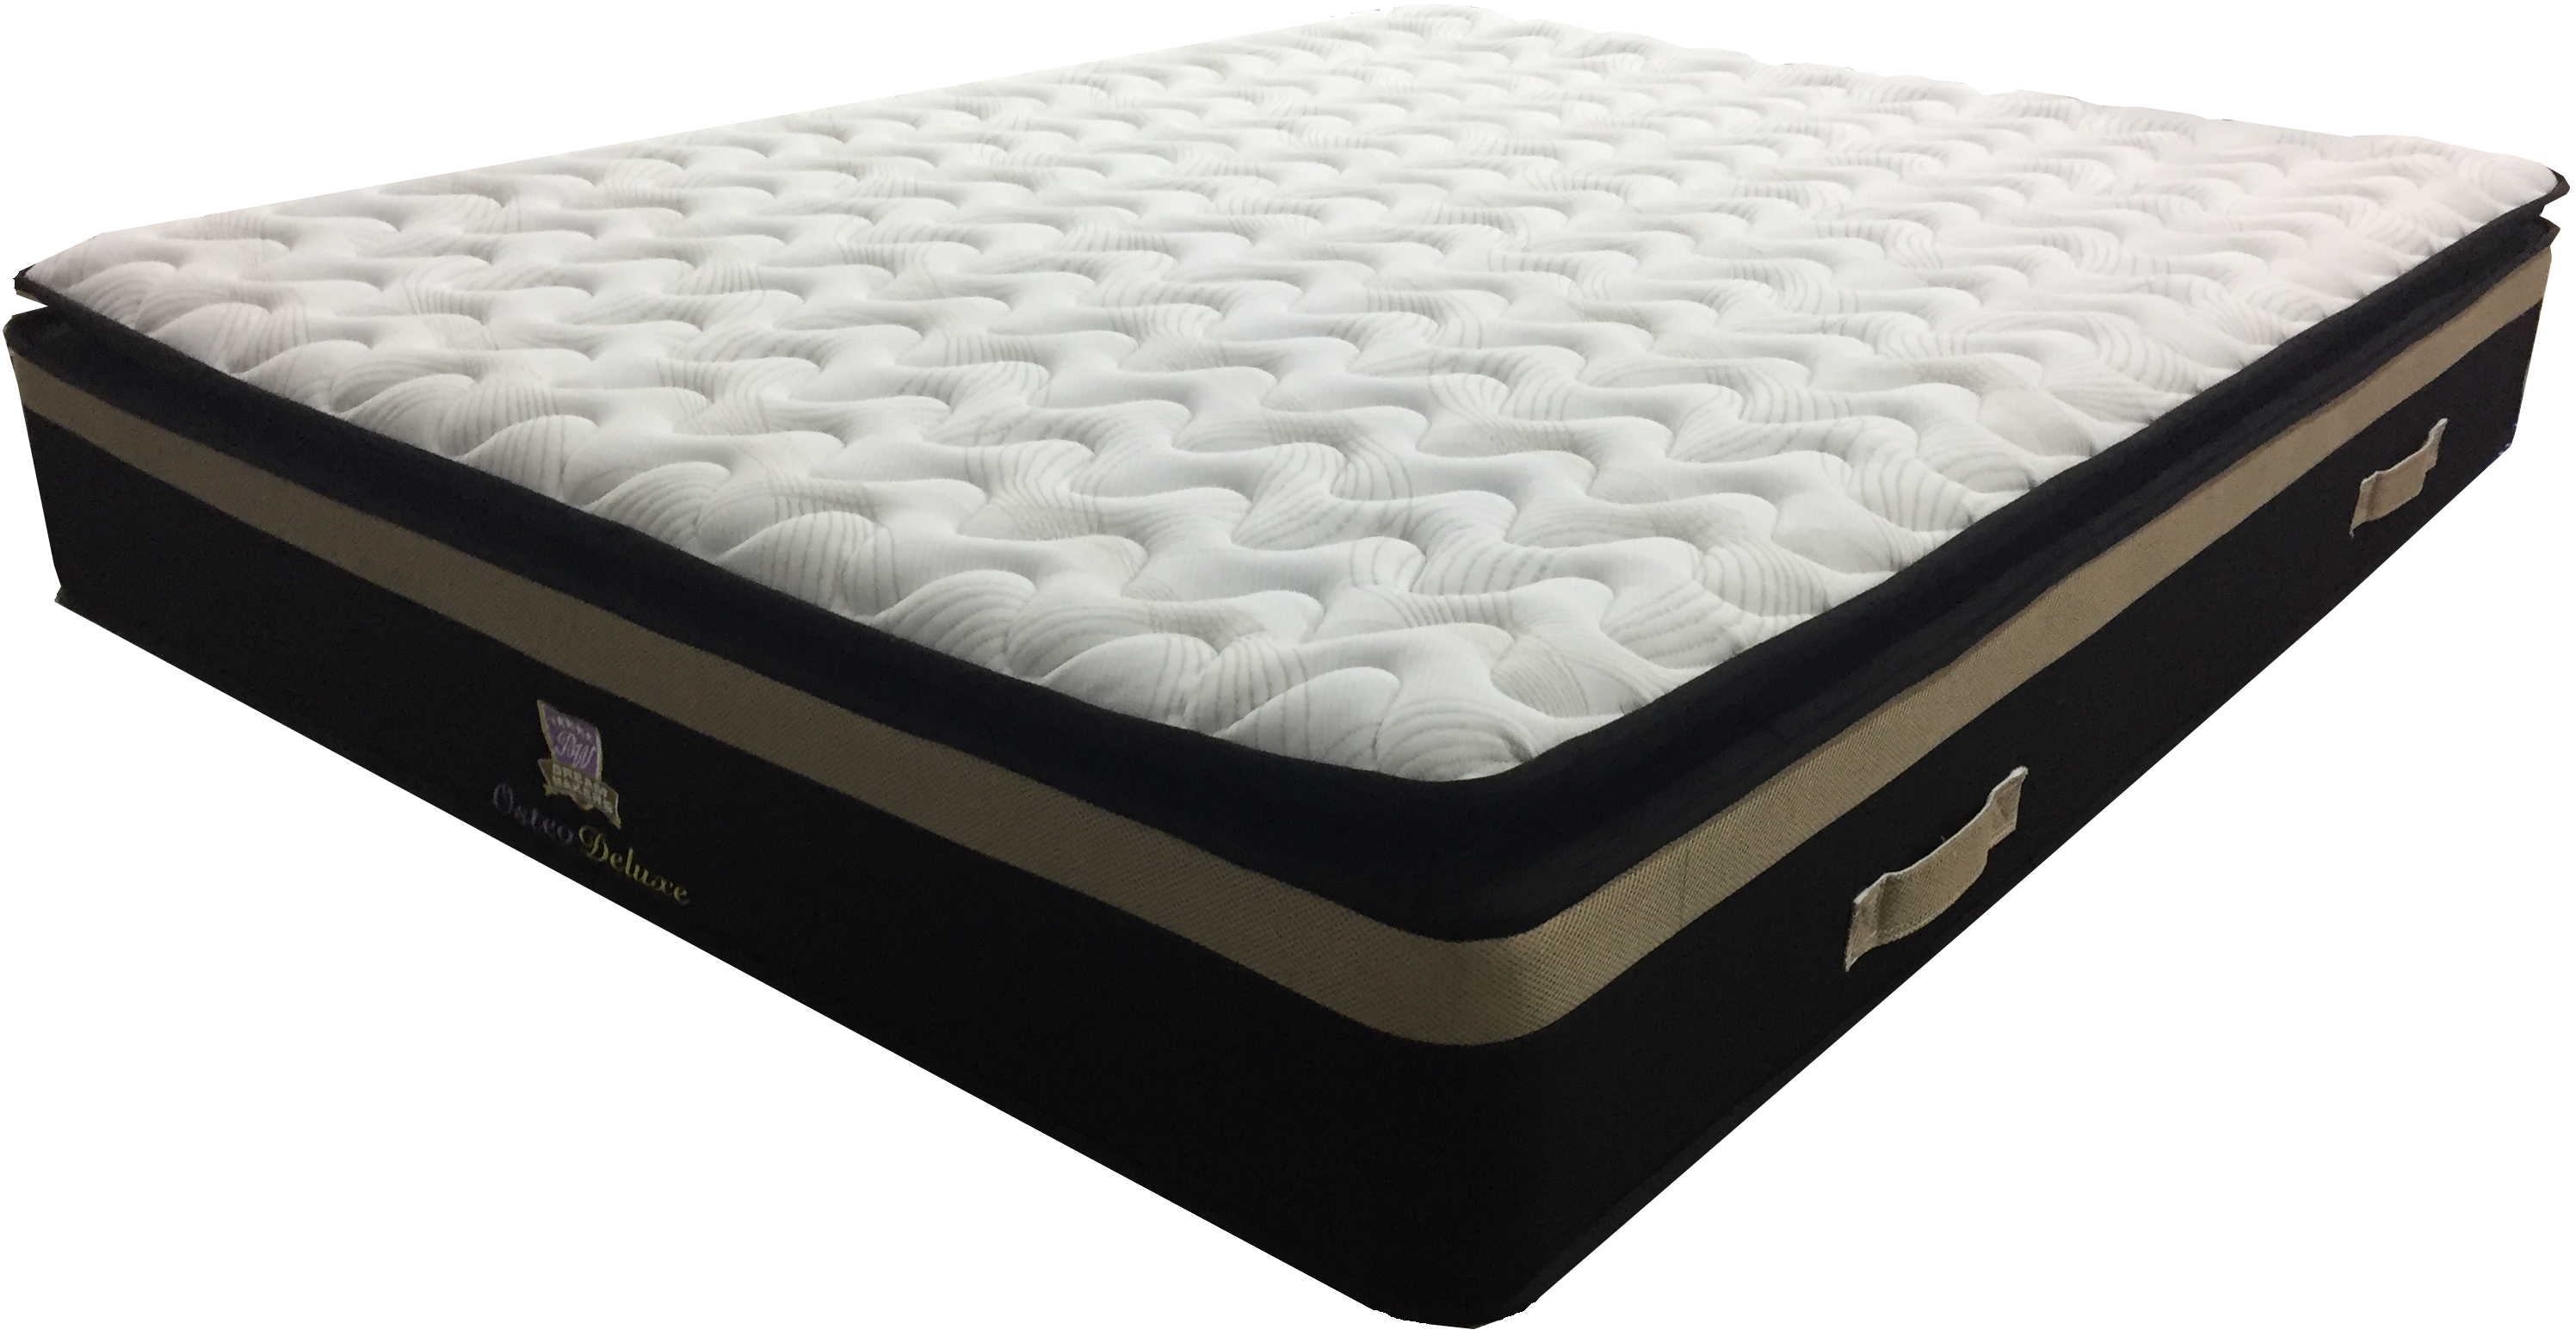 budget mattress hot sleeper side heavy